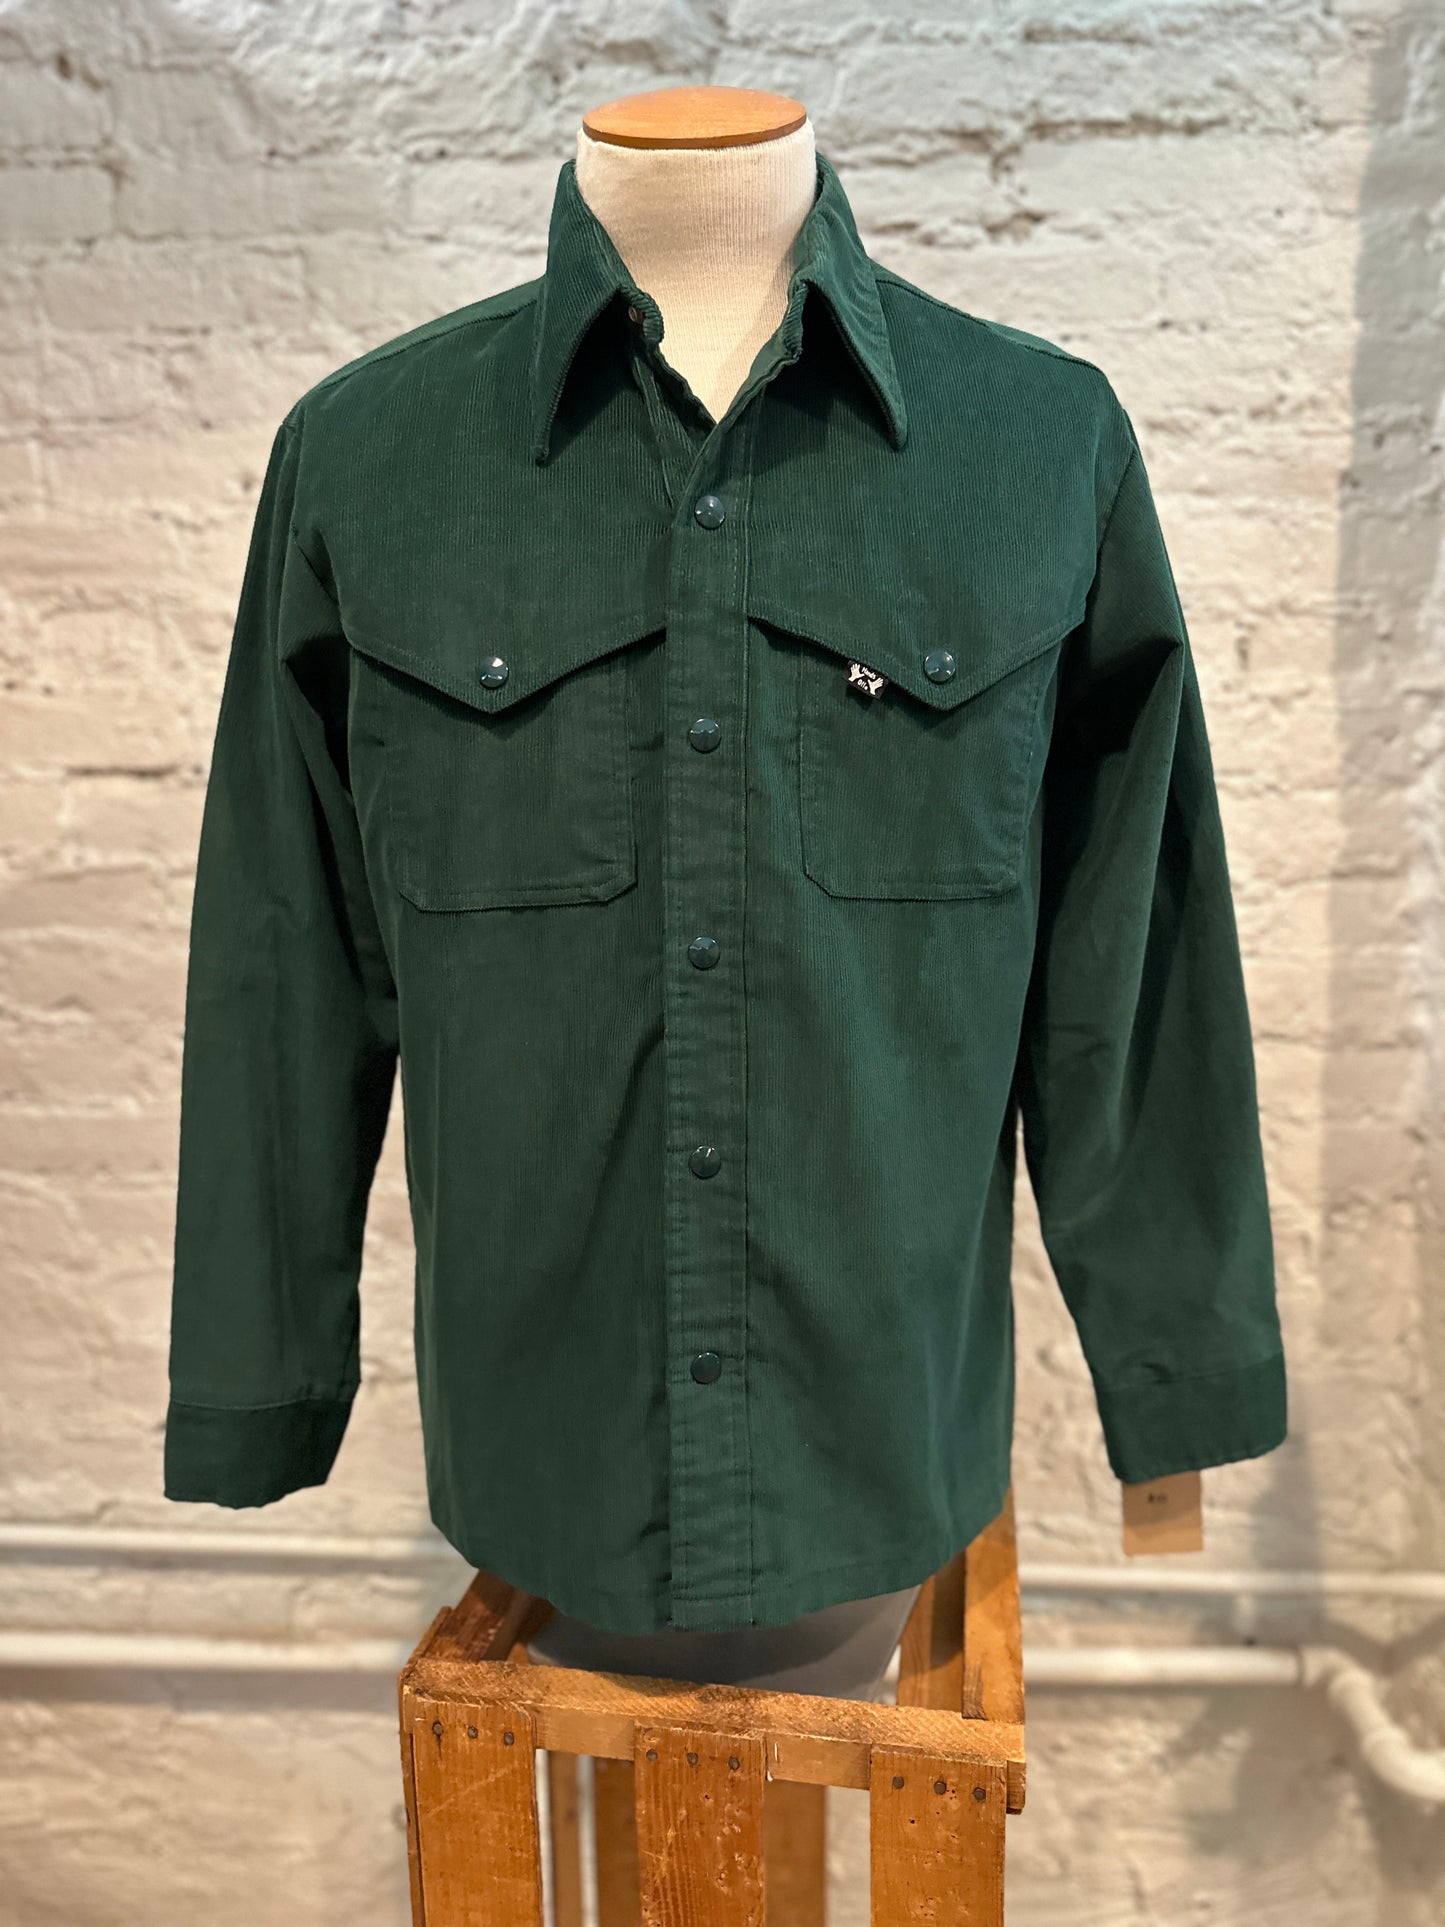 Mens Green Corduroy Snap Shirt 1970s